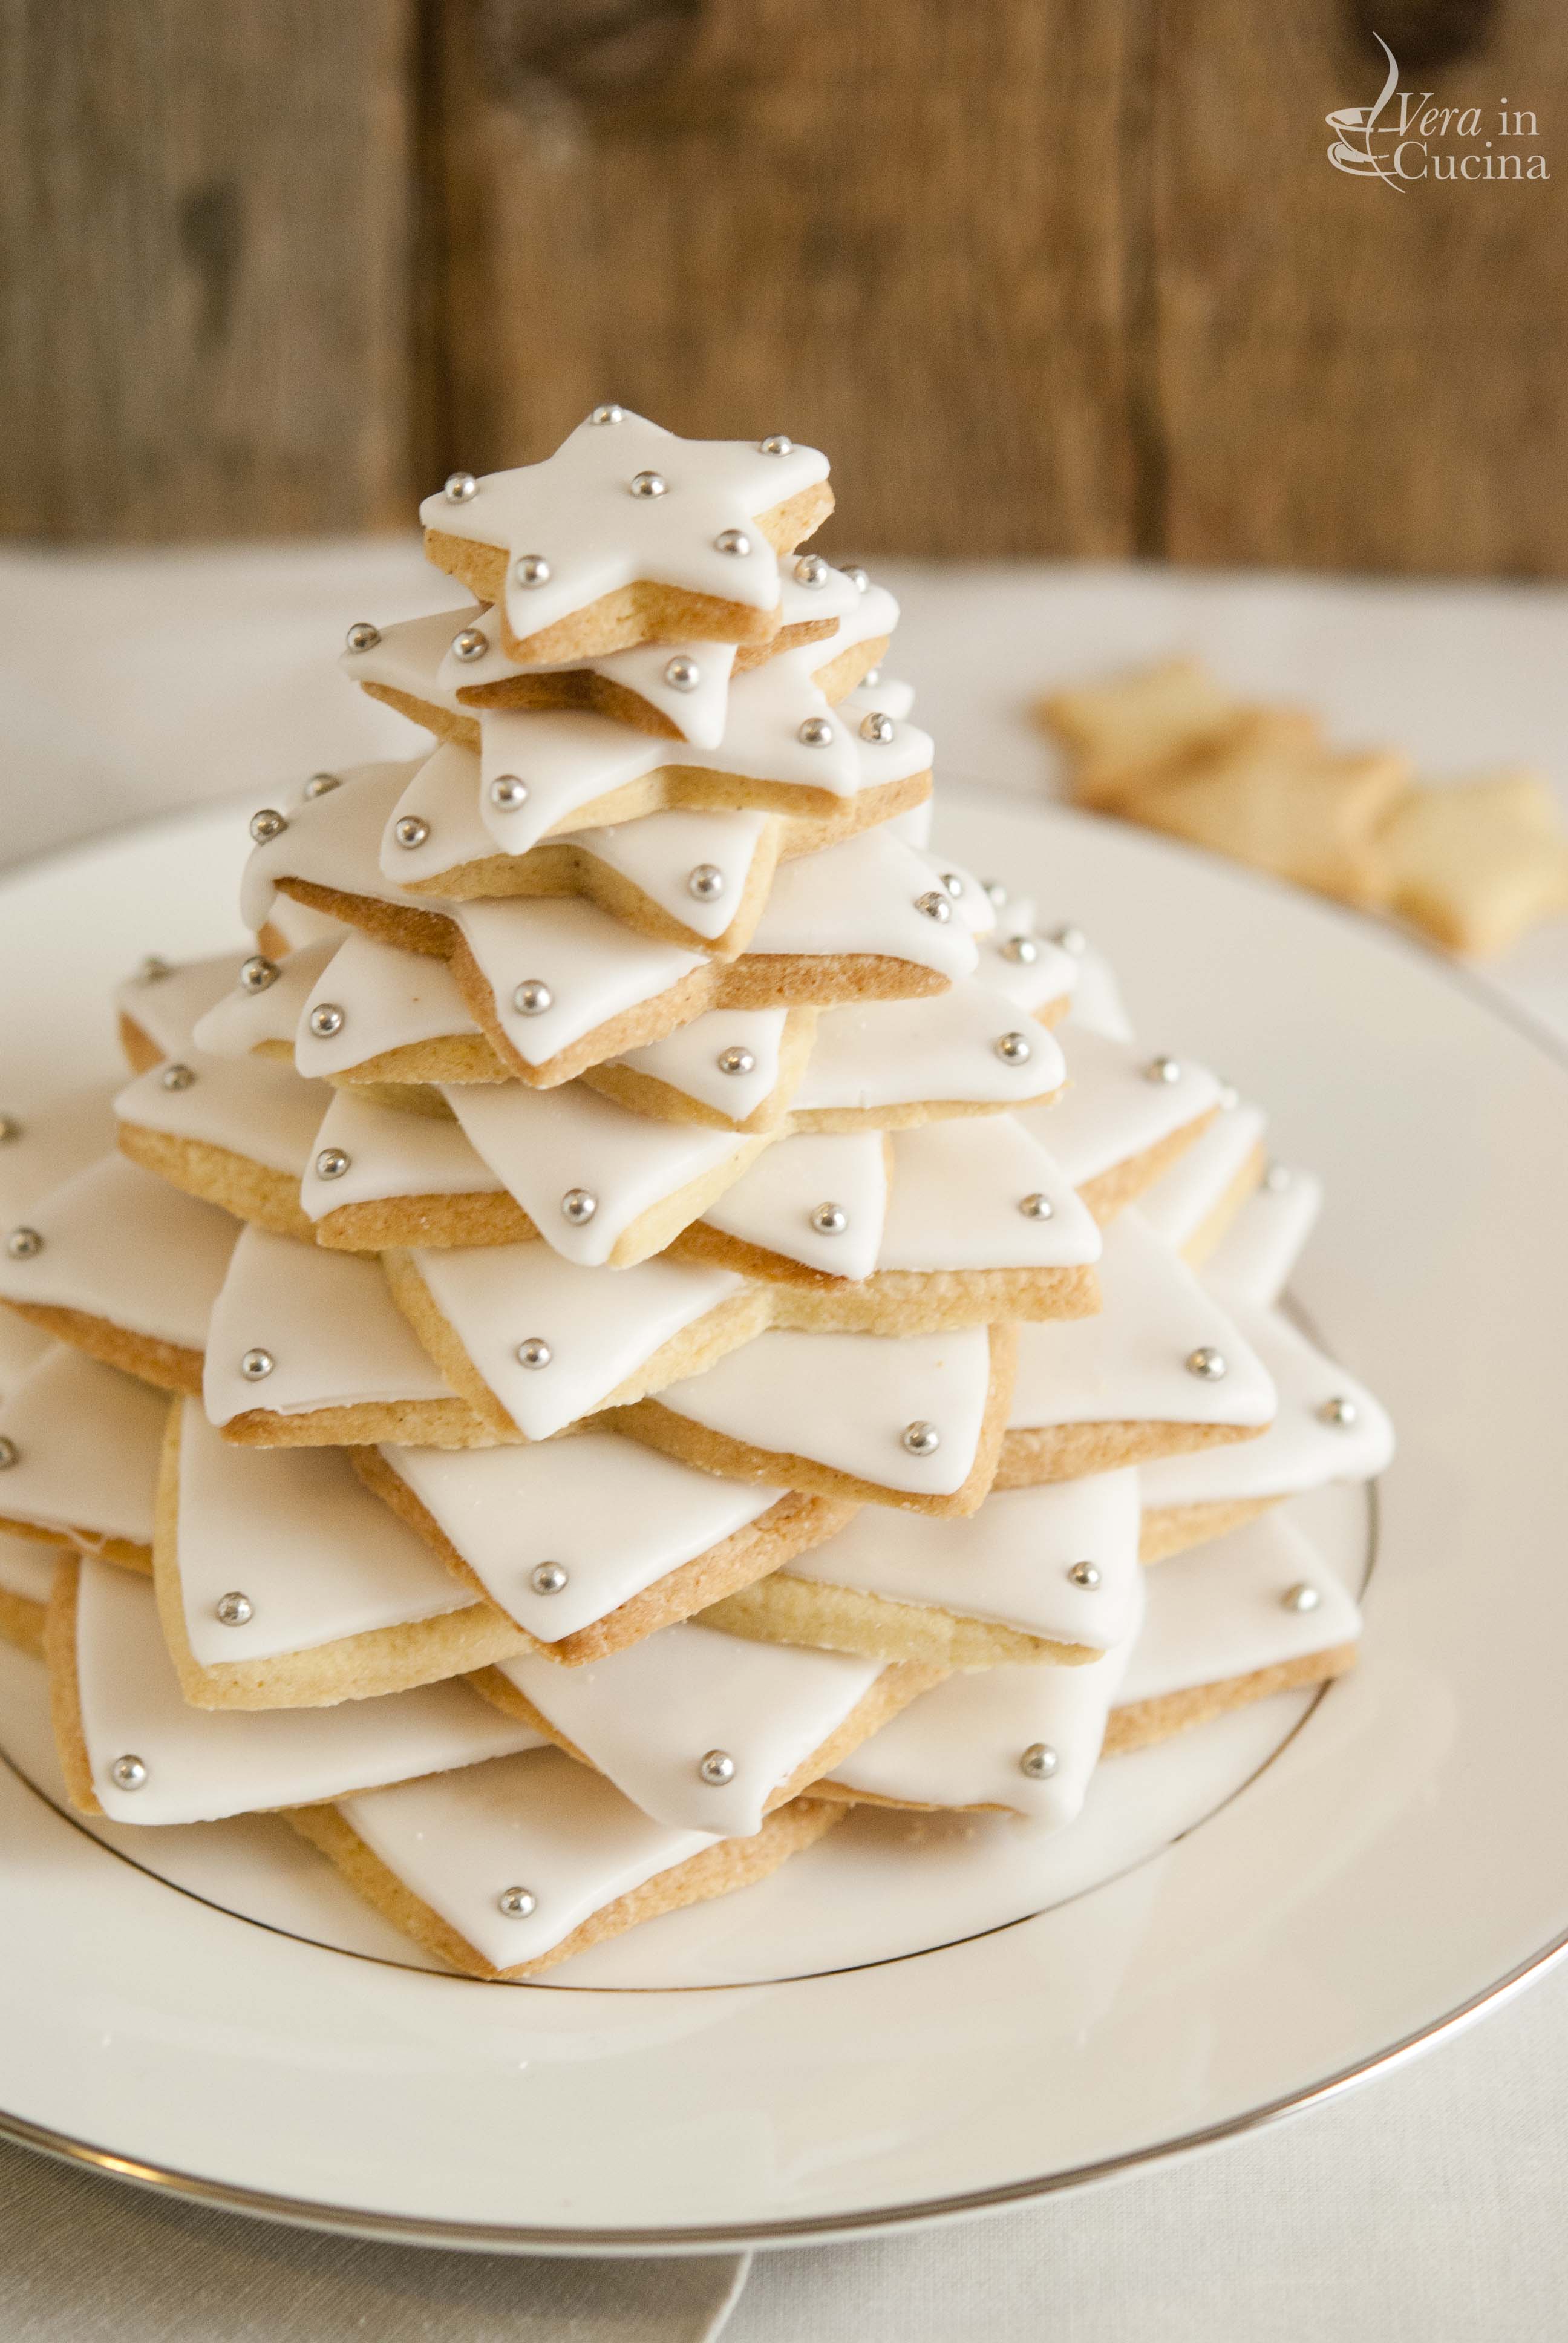 Dolci Di Natale Con Pasta Frolla.Un Albero Di Natale Di Biscotti Per La Cena Della Vigilia Vera In Cucina